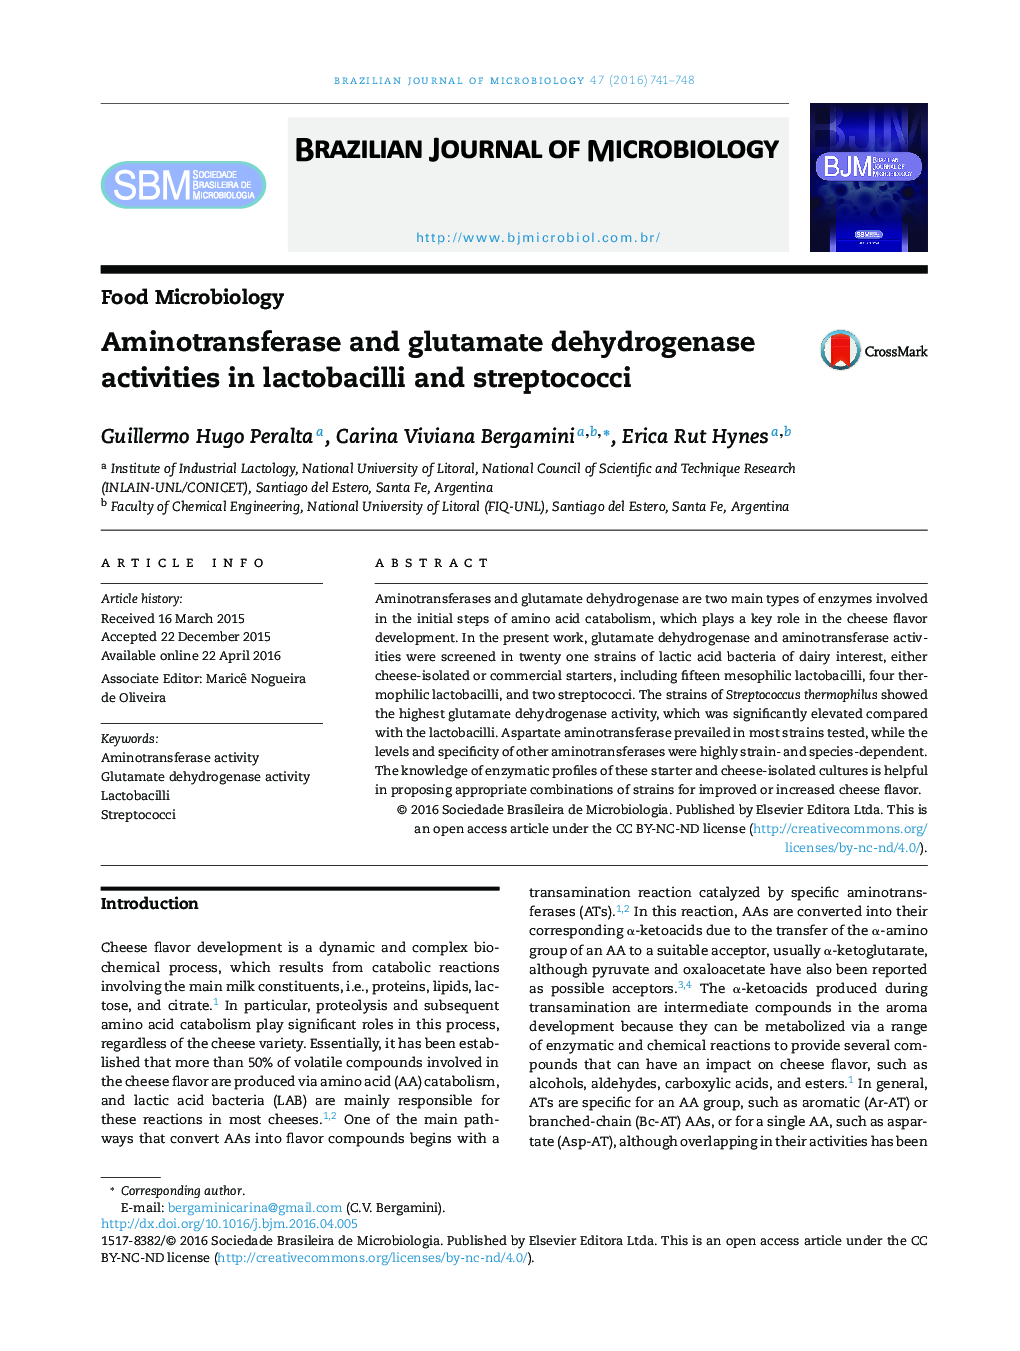 فعالیت های آمینوترانسفراز و گلوتامات دهیدروژناز در لاکتوباسیل ها و استرپتوکوک ها 